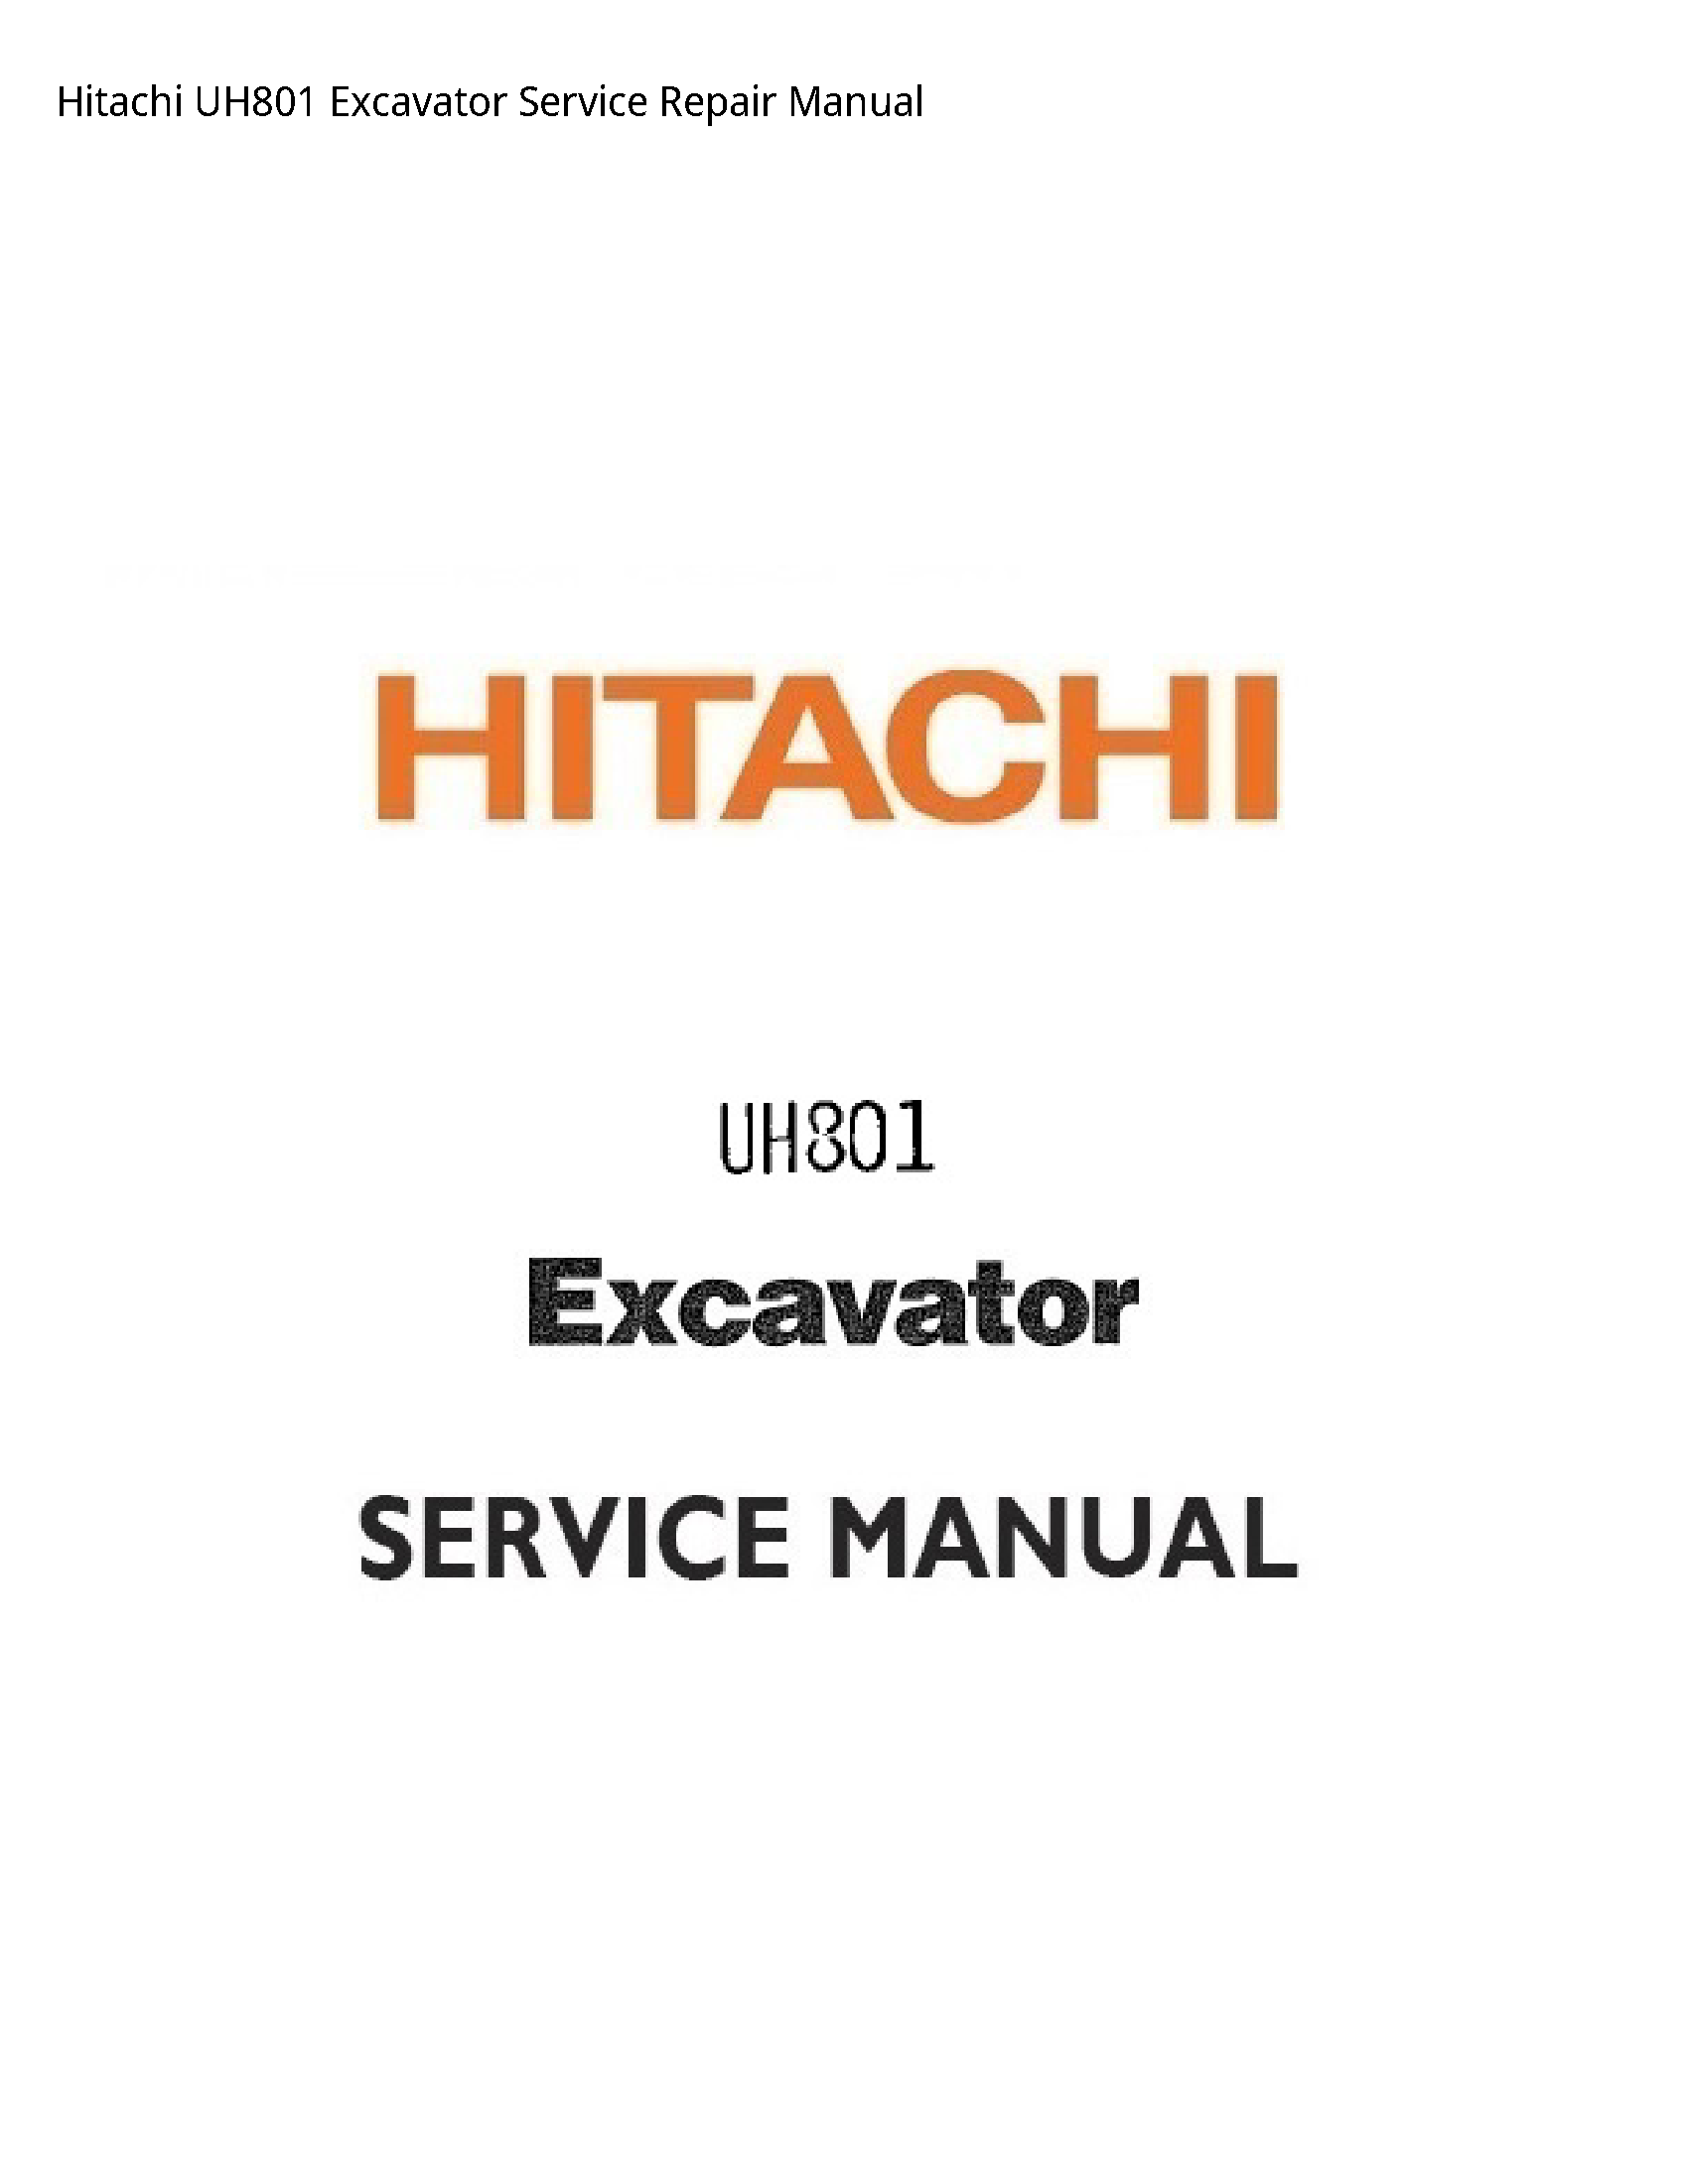 Hitachi UH801 Excavator manual